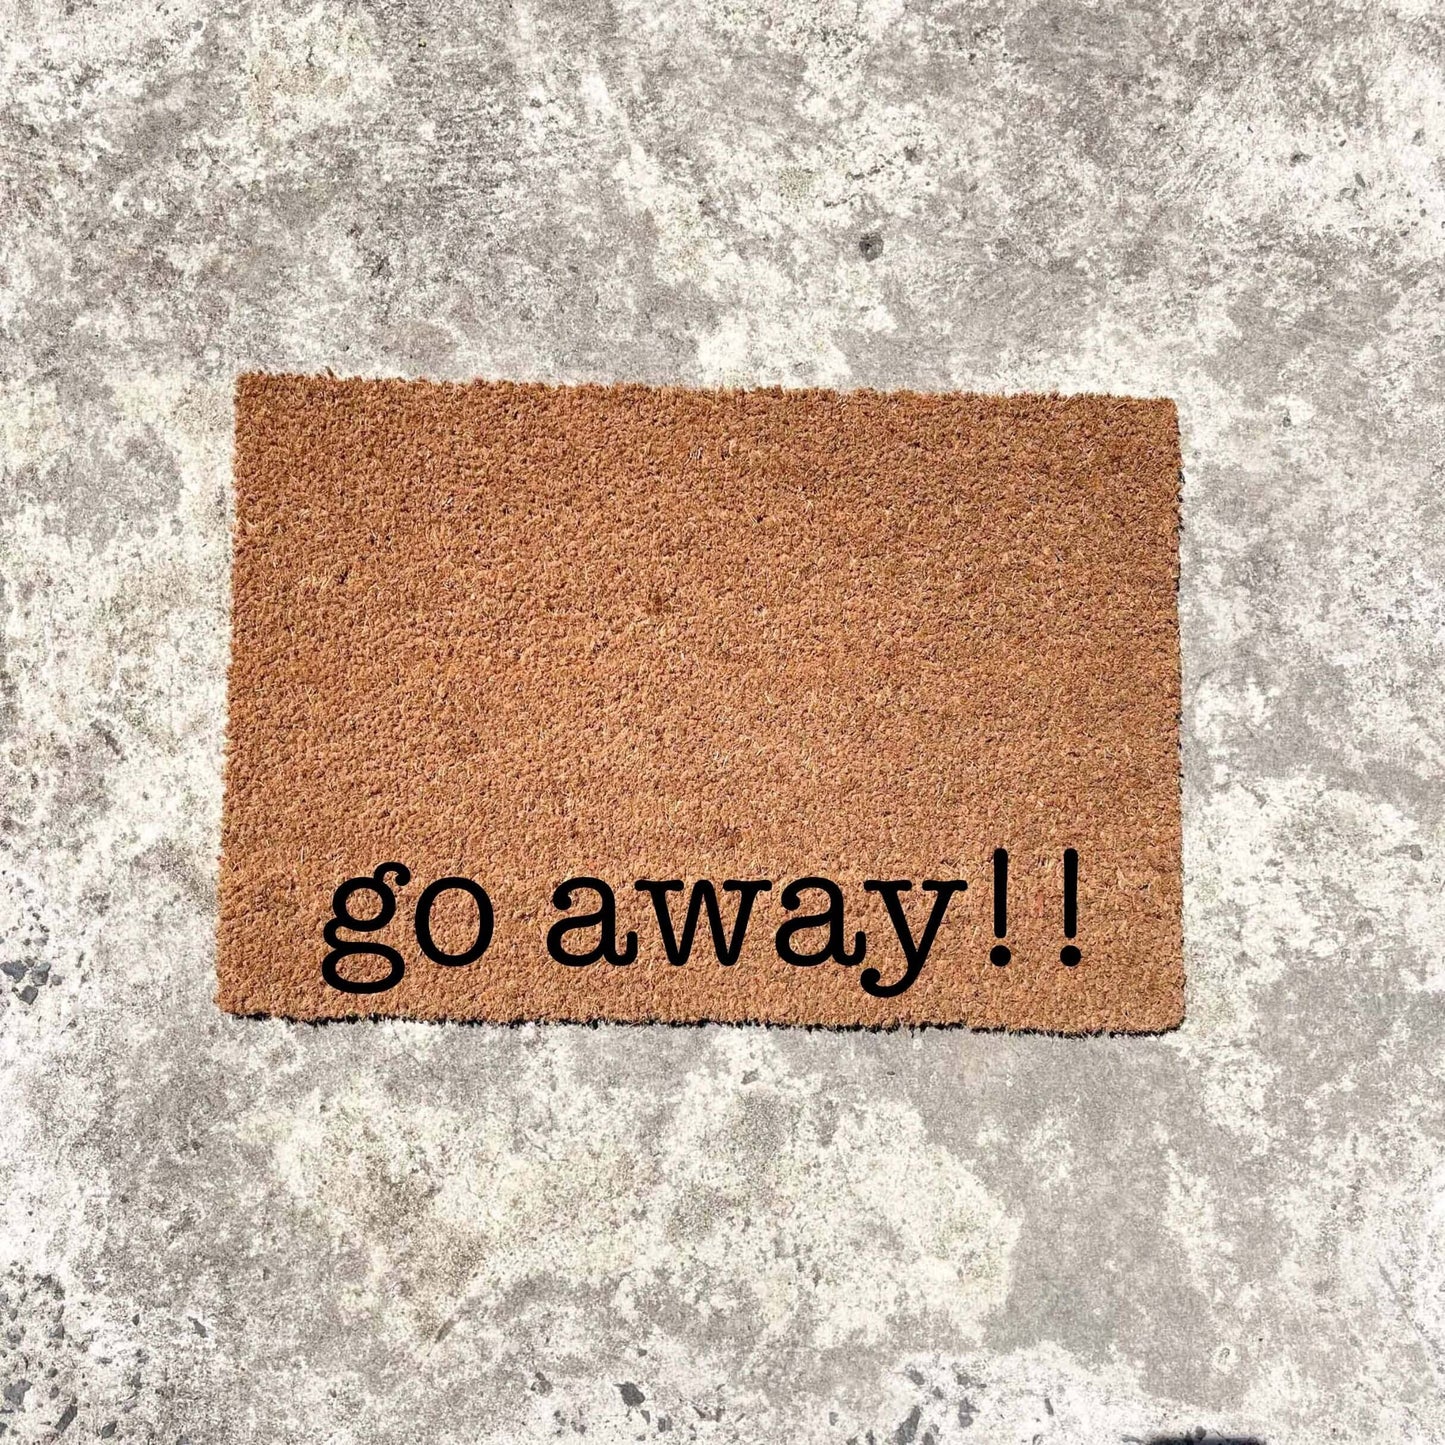 Go away!! doormat, custom doormat, personalised doormat, door mat